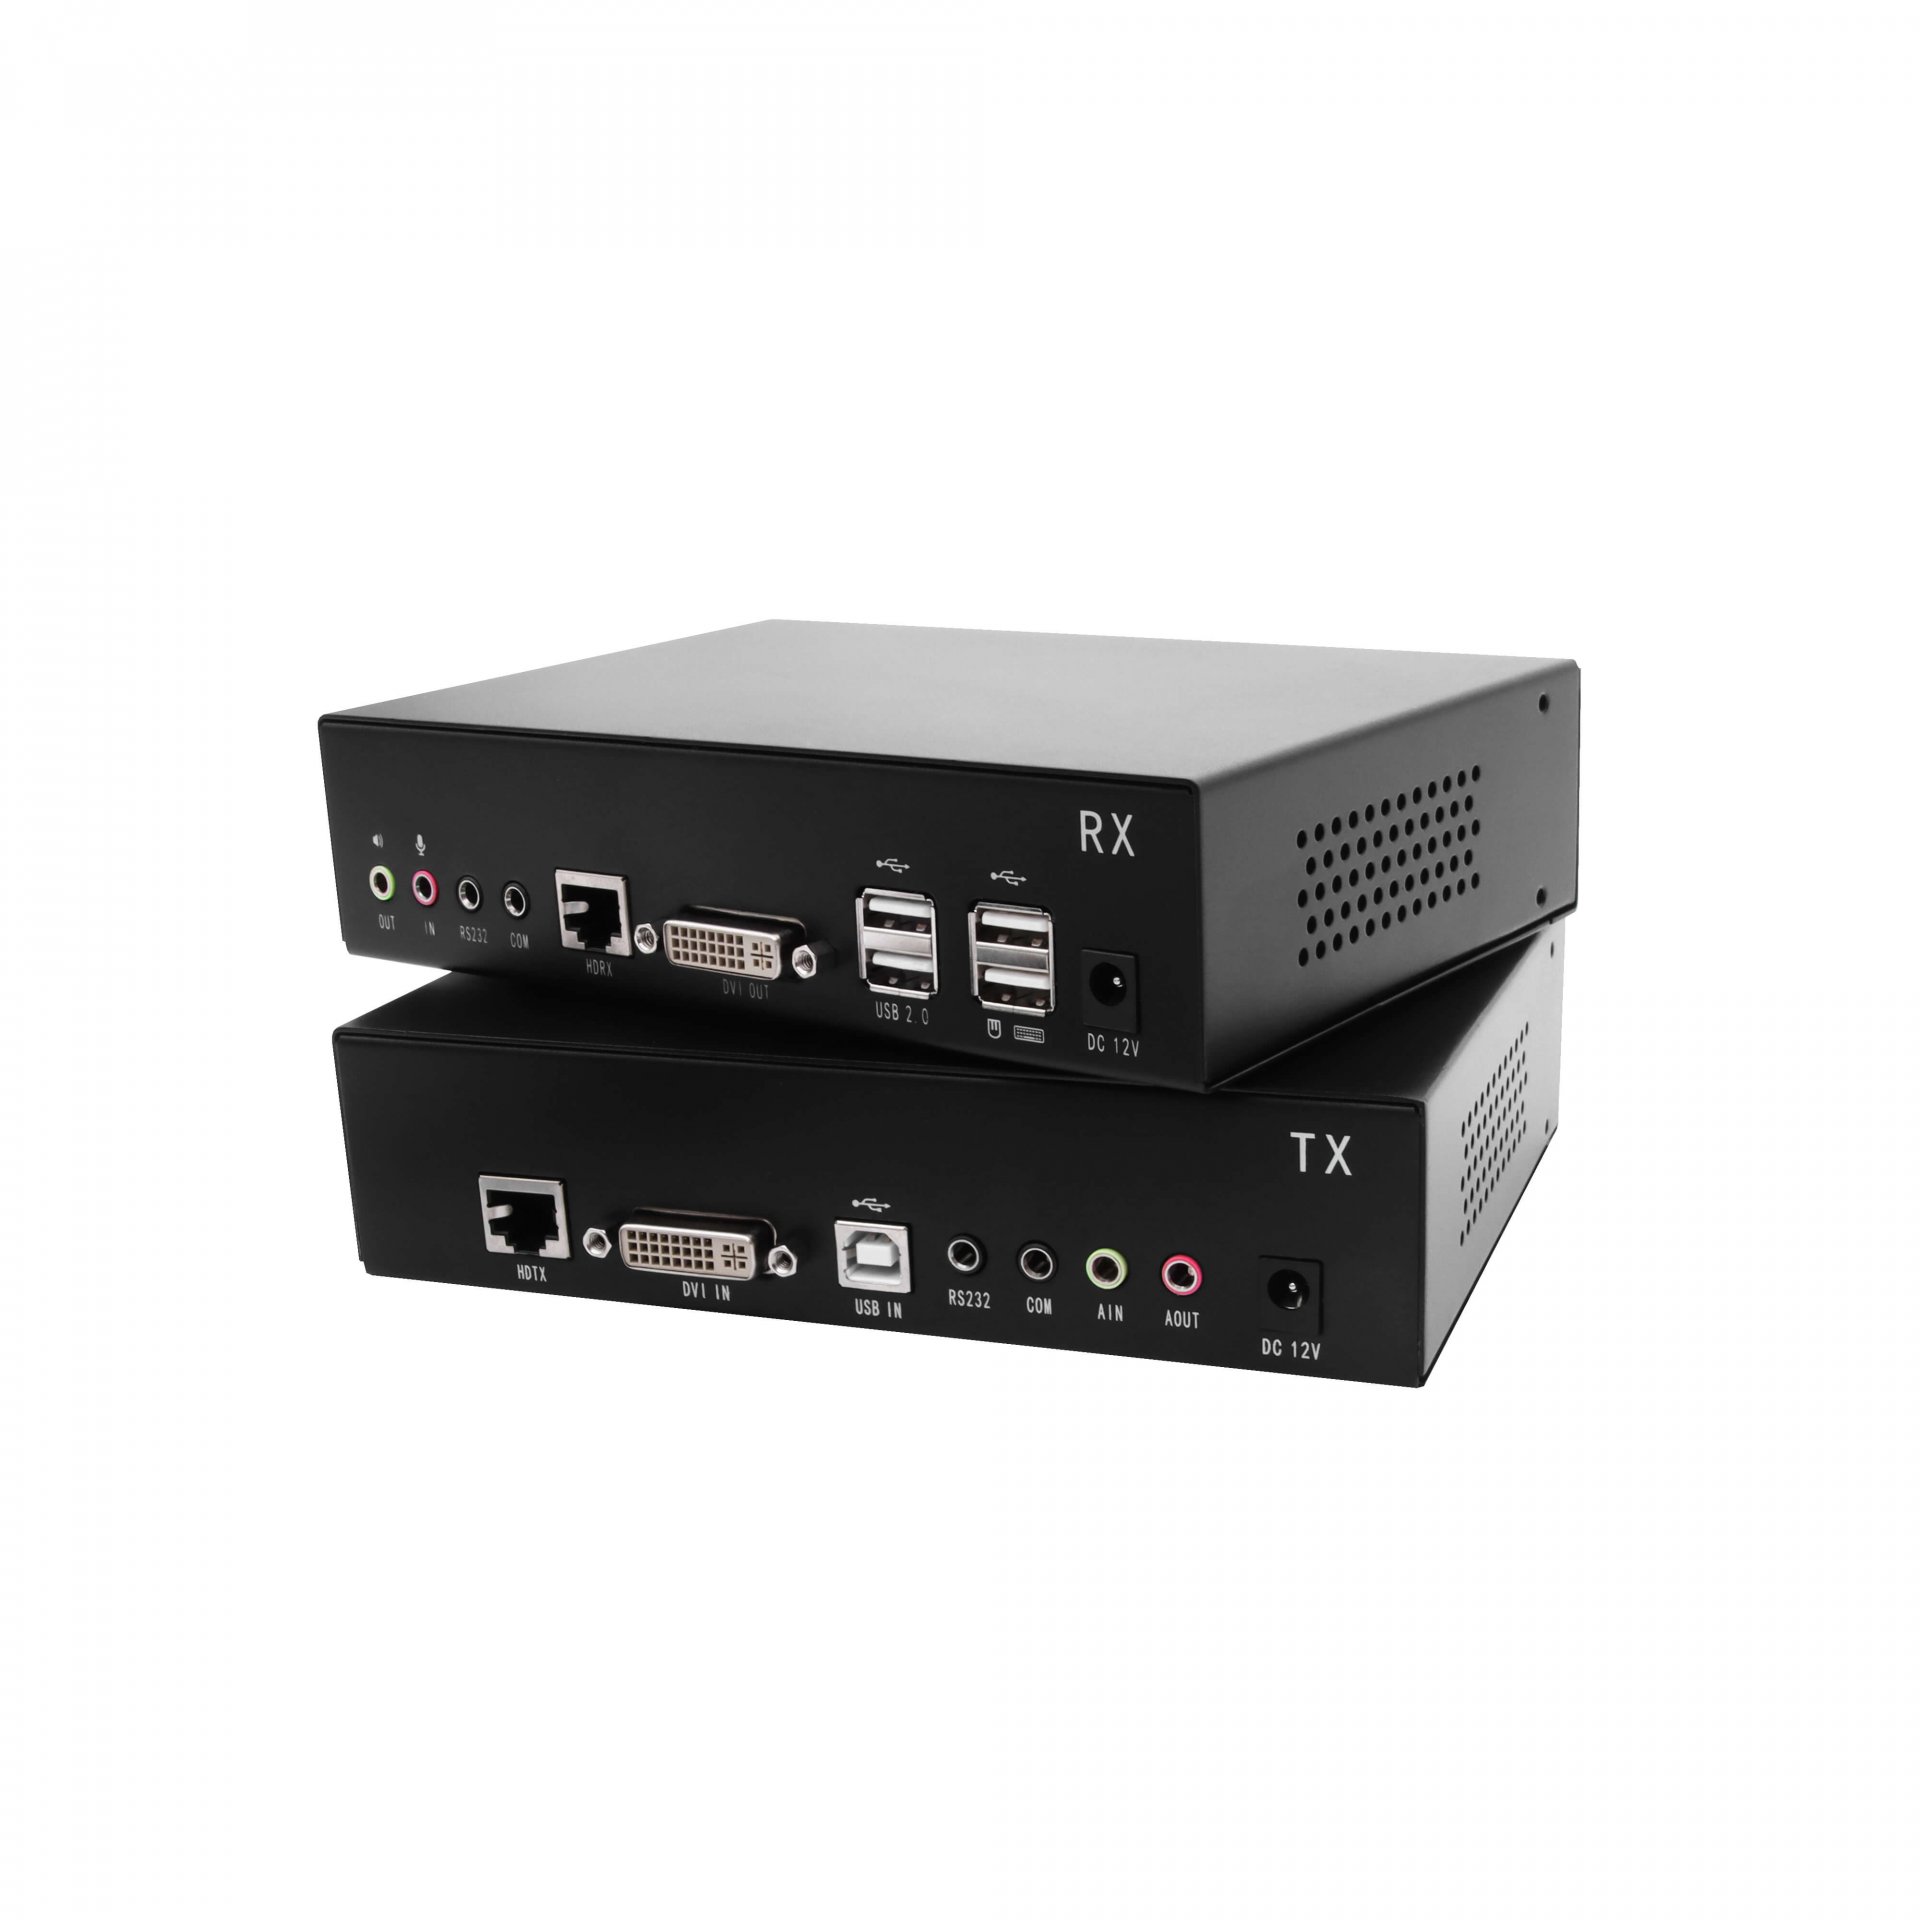 *KED101S : Kinan USB DVI OVER CAT5E & CAT6 KVM EXTENDER